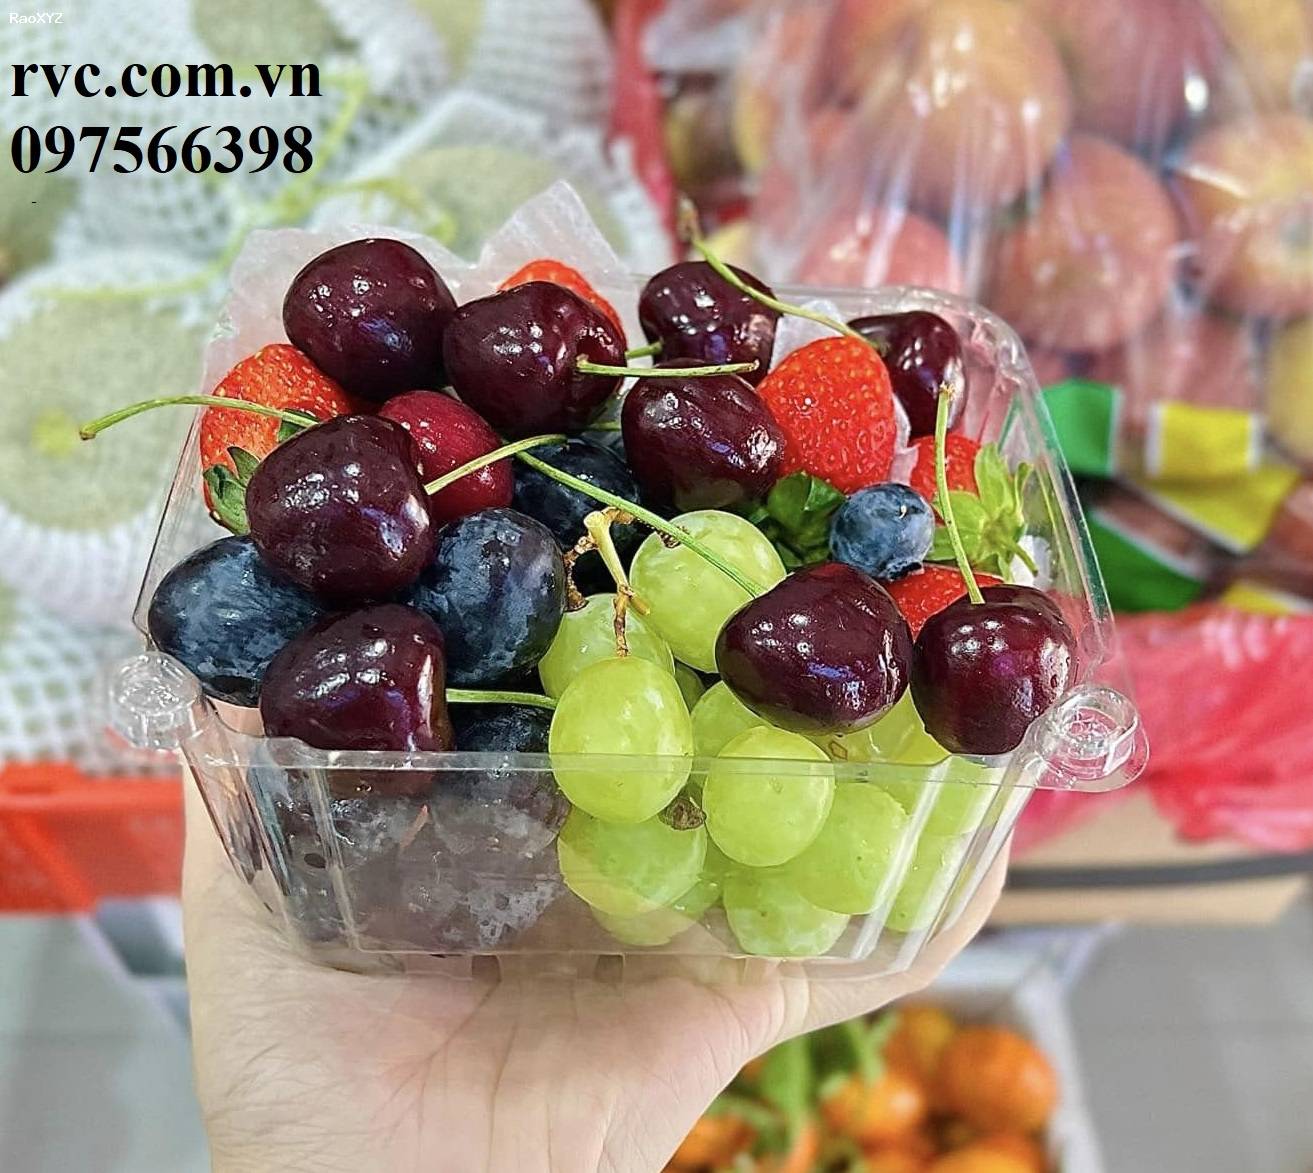 Chia sẽ mẫu hộp nhựa trái cây 500g chính hãng, giá rẻ tại Sài Gòn